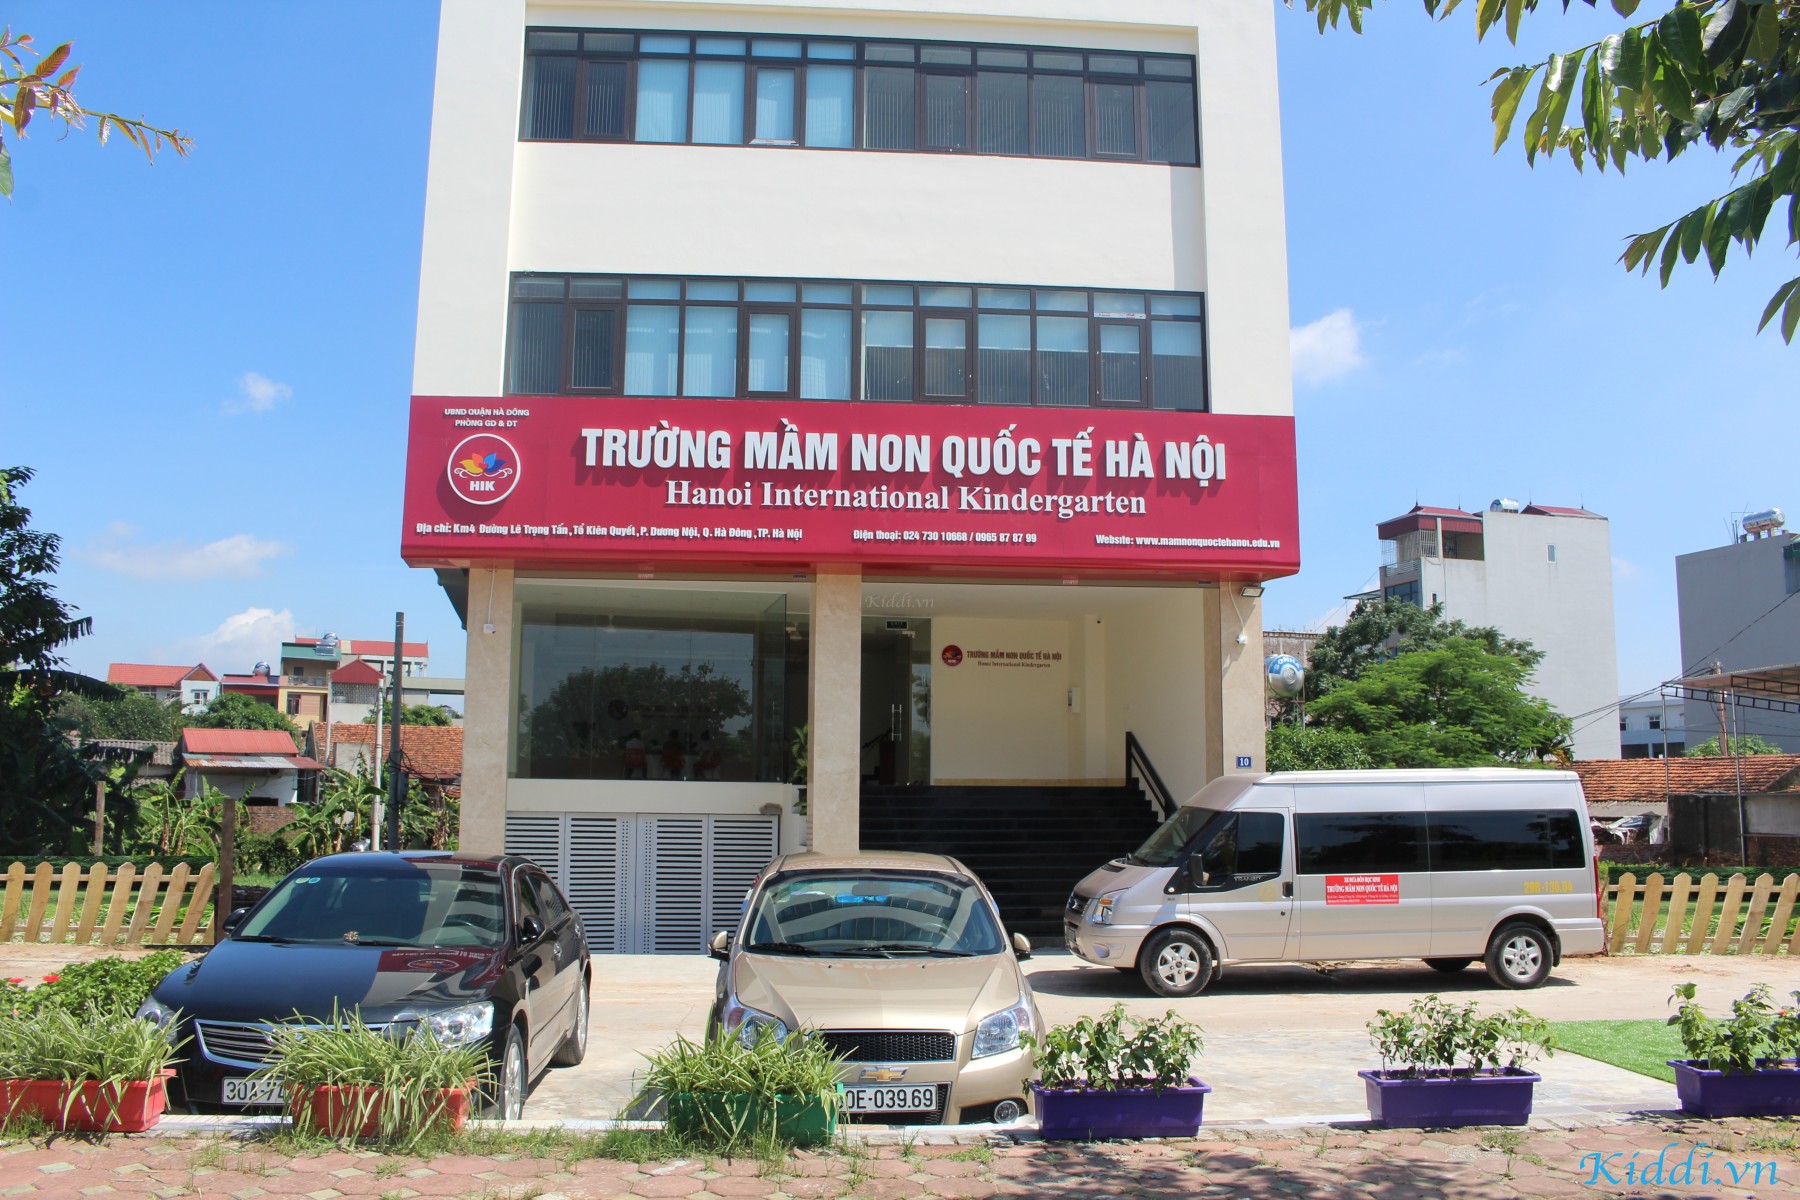 Cơ sở vật chất trường mầm non Quốc tế Hà Nội - HIK - tại quận Hà Đông, Hà Nội (Ảnh: Kiddi)